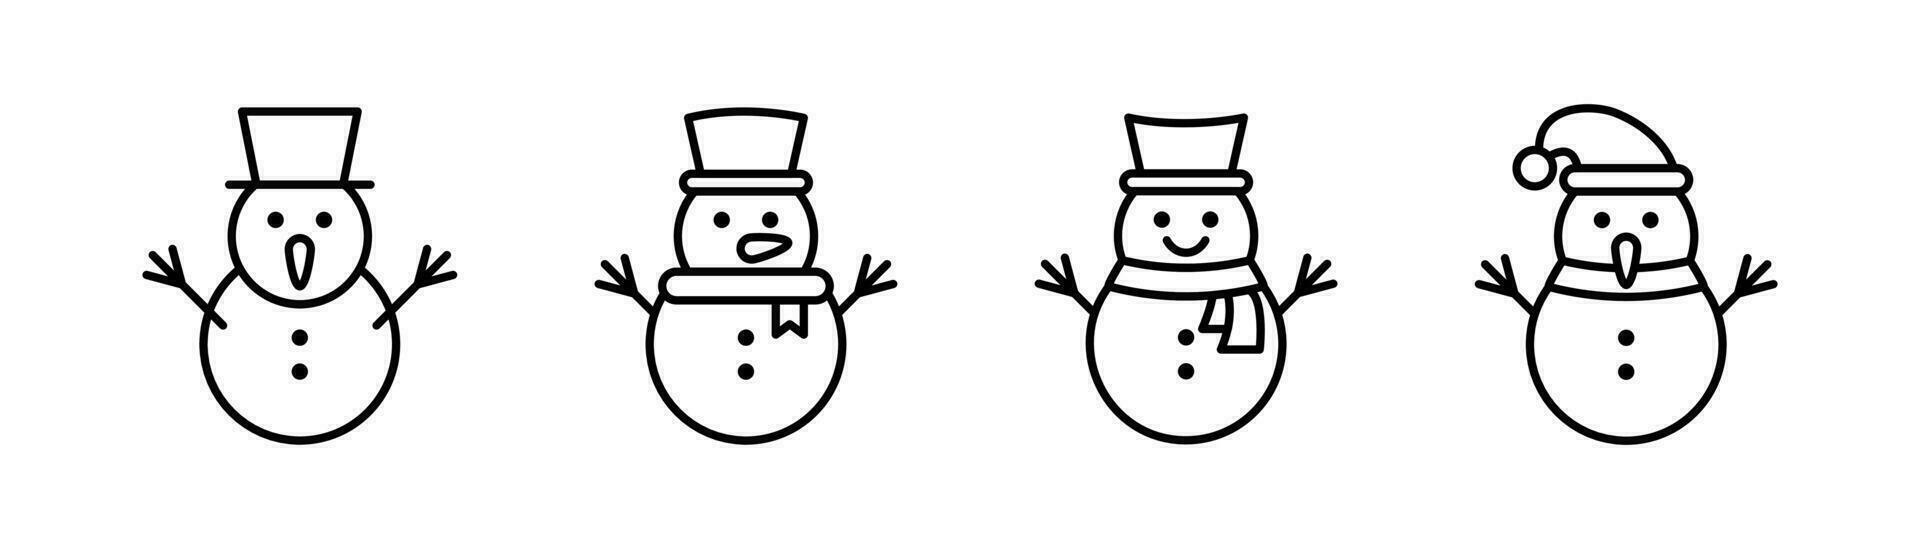 bonhomme de neige icône dans doubler. contour bonhomme de neige Icônes ensemble. hiver bonhomme de neige signe dans doubler. Stock vecteur illustration